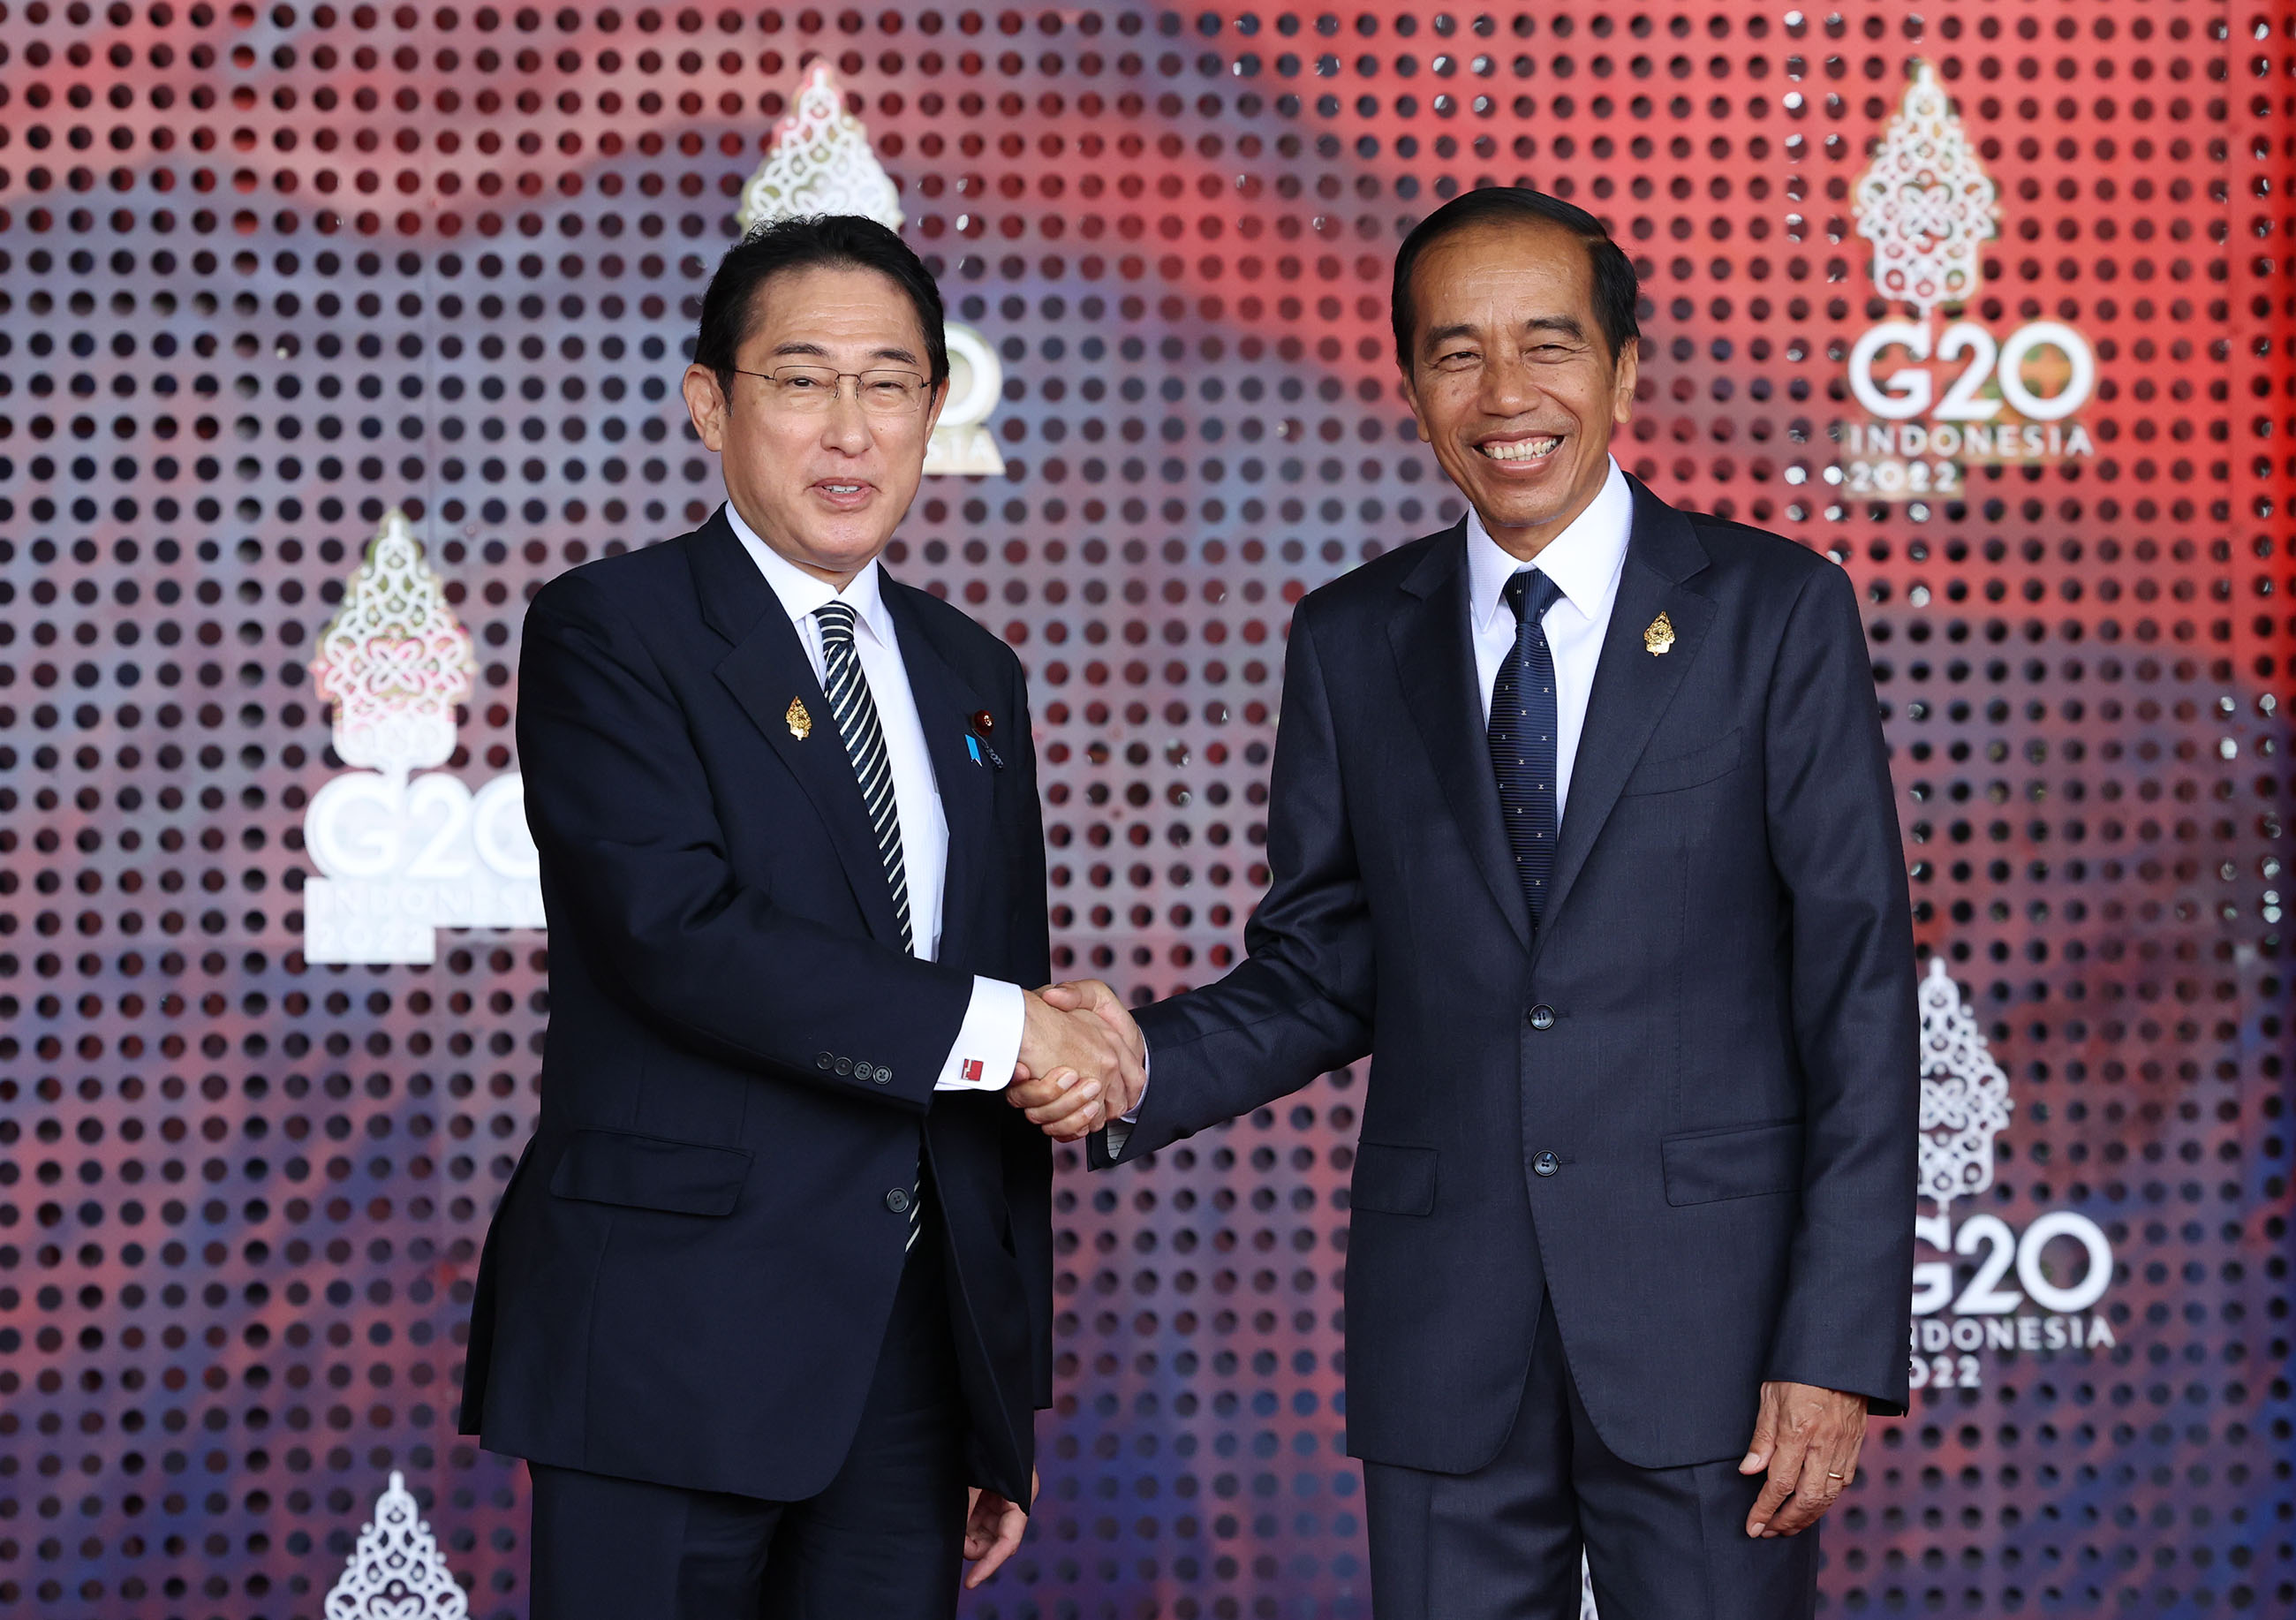 ジョコ・ウィドド・インドネシア大統領による出迎えを受ける岸田総理